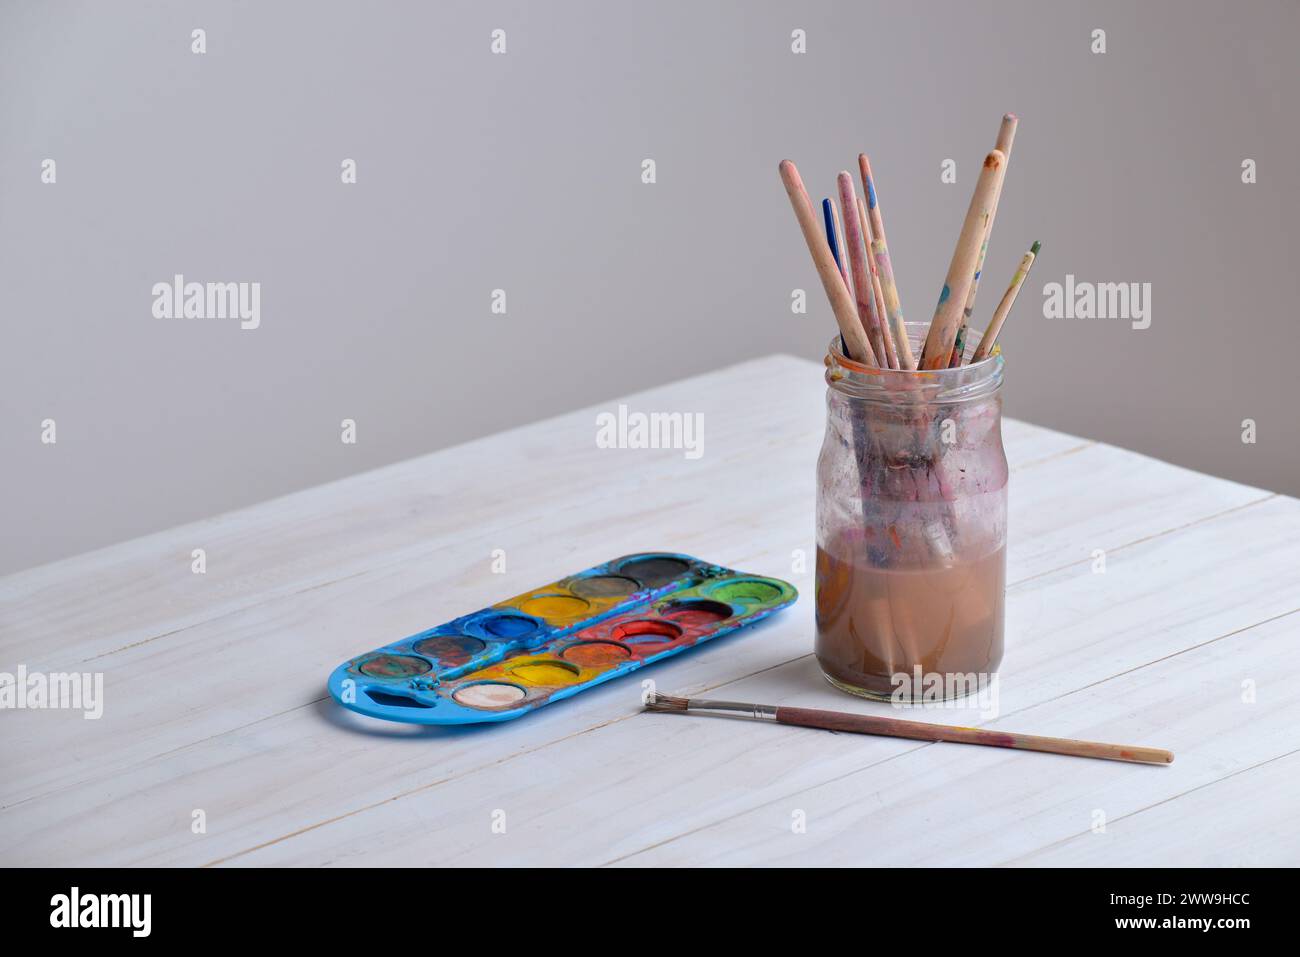 Becher mit Pinseln auf Arbeitstisch mit Aquarellen. Leerzeichen beiseite kopieren. Ideal für Kunstbedarf, Kreativität oder Malkonzepte Stockfoto